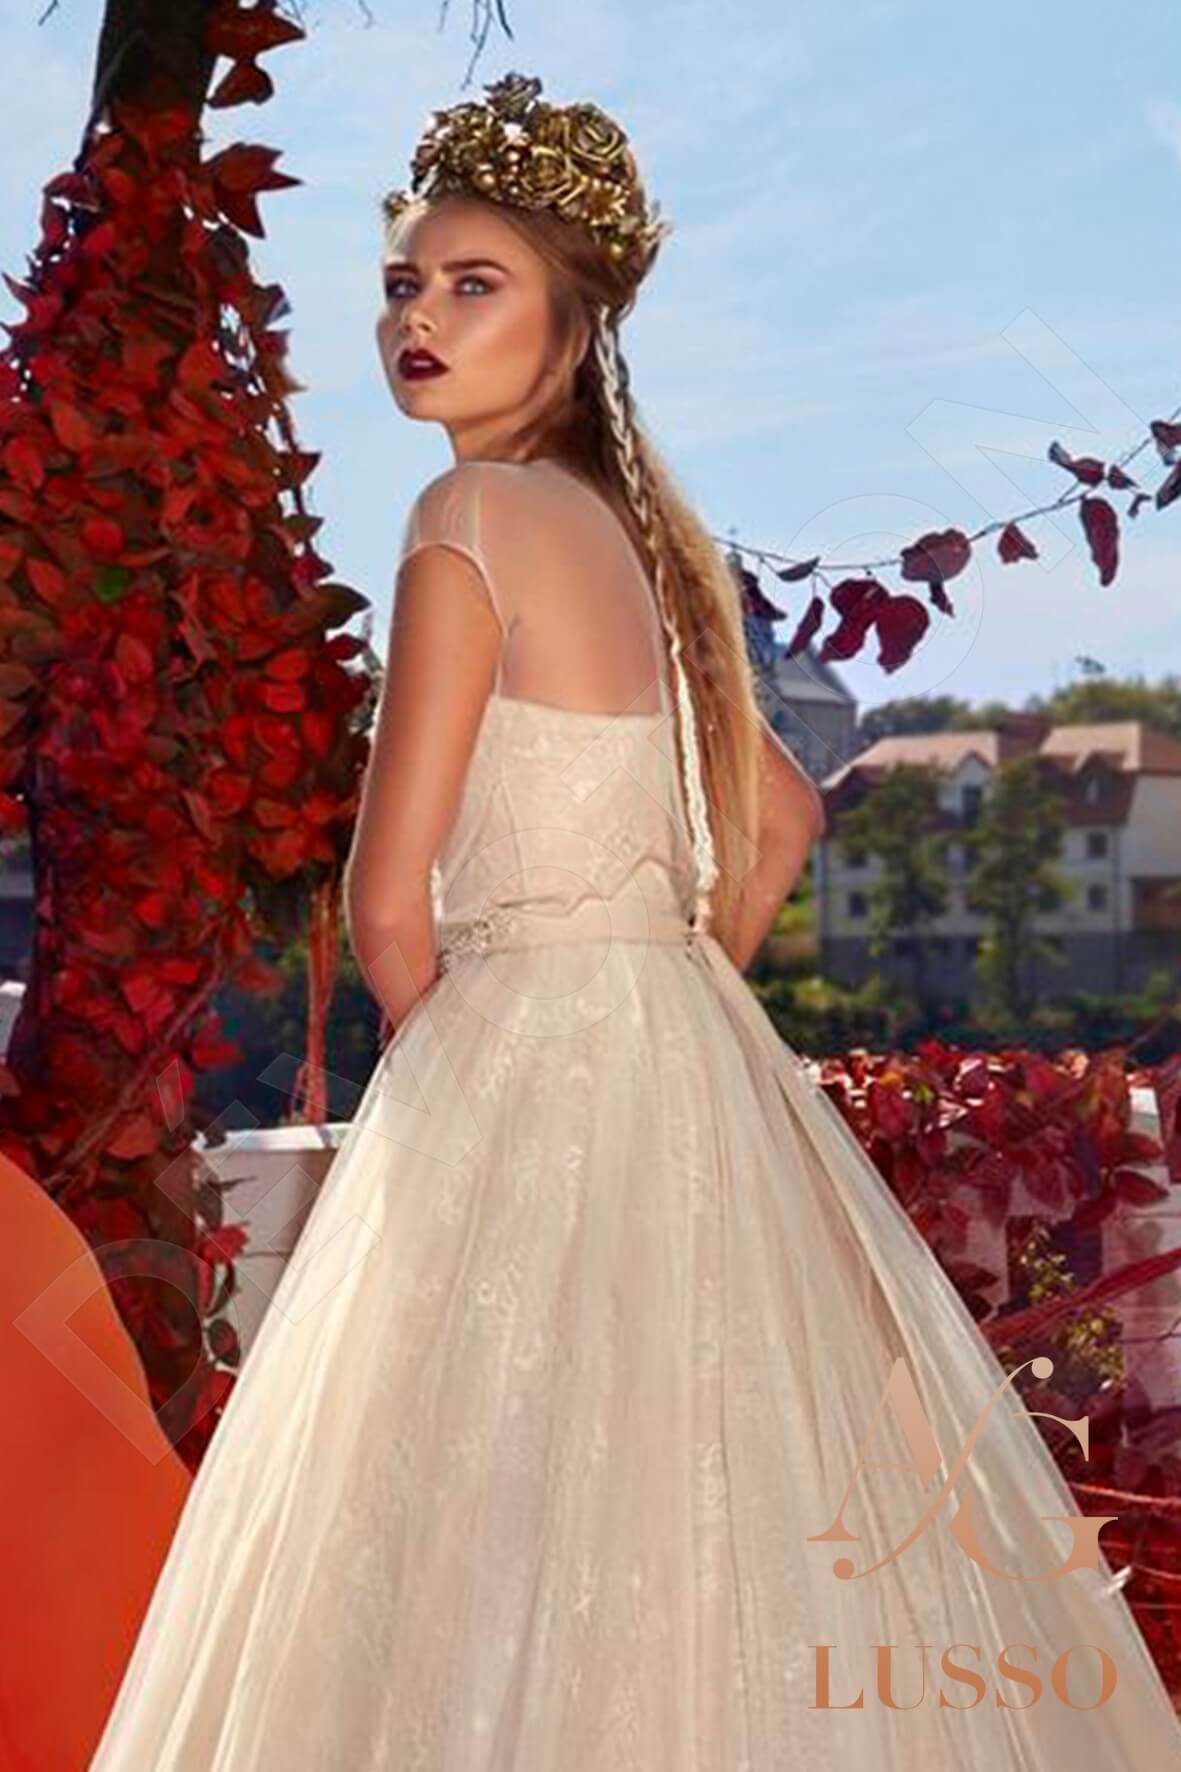 Feria Open back Princess/Ball Gown Short/ Cap sleeve Wedding Dress 3